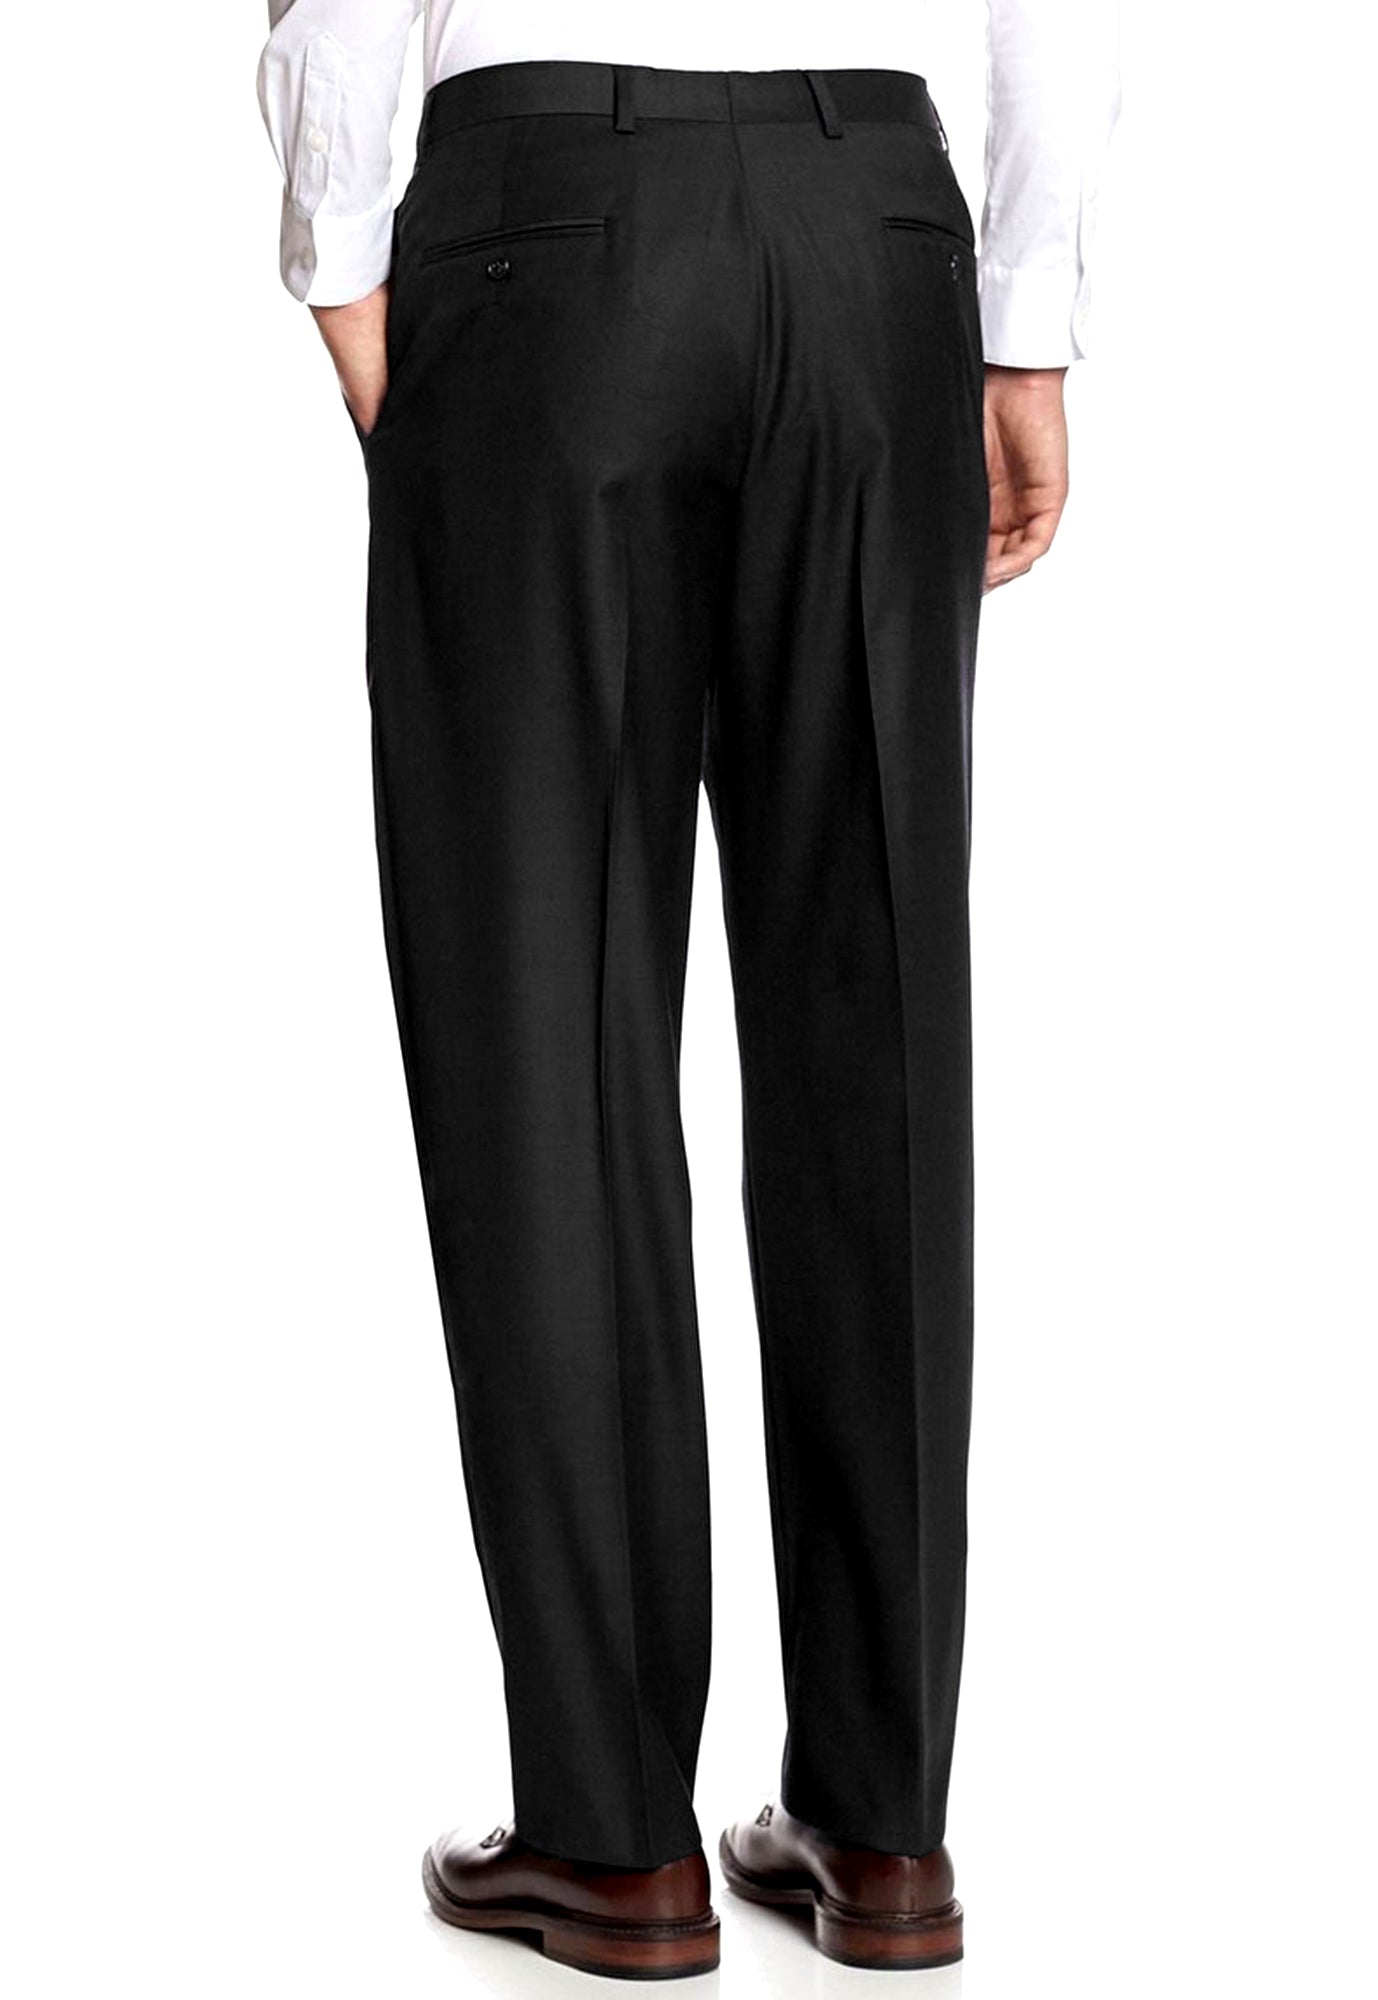 Men's Black, Pleated Front, Comfort-Waist Dress Pants - 99tux